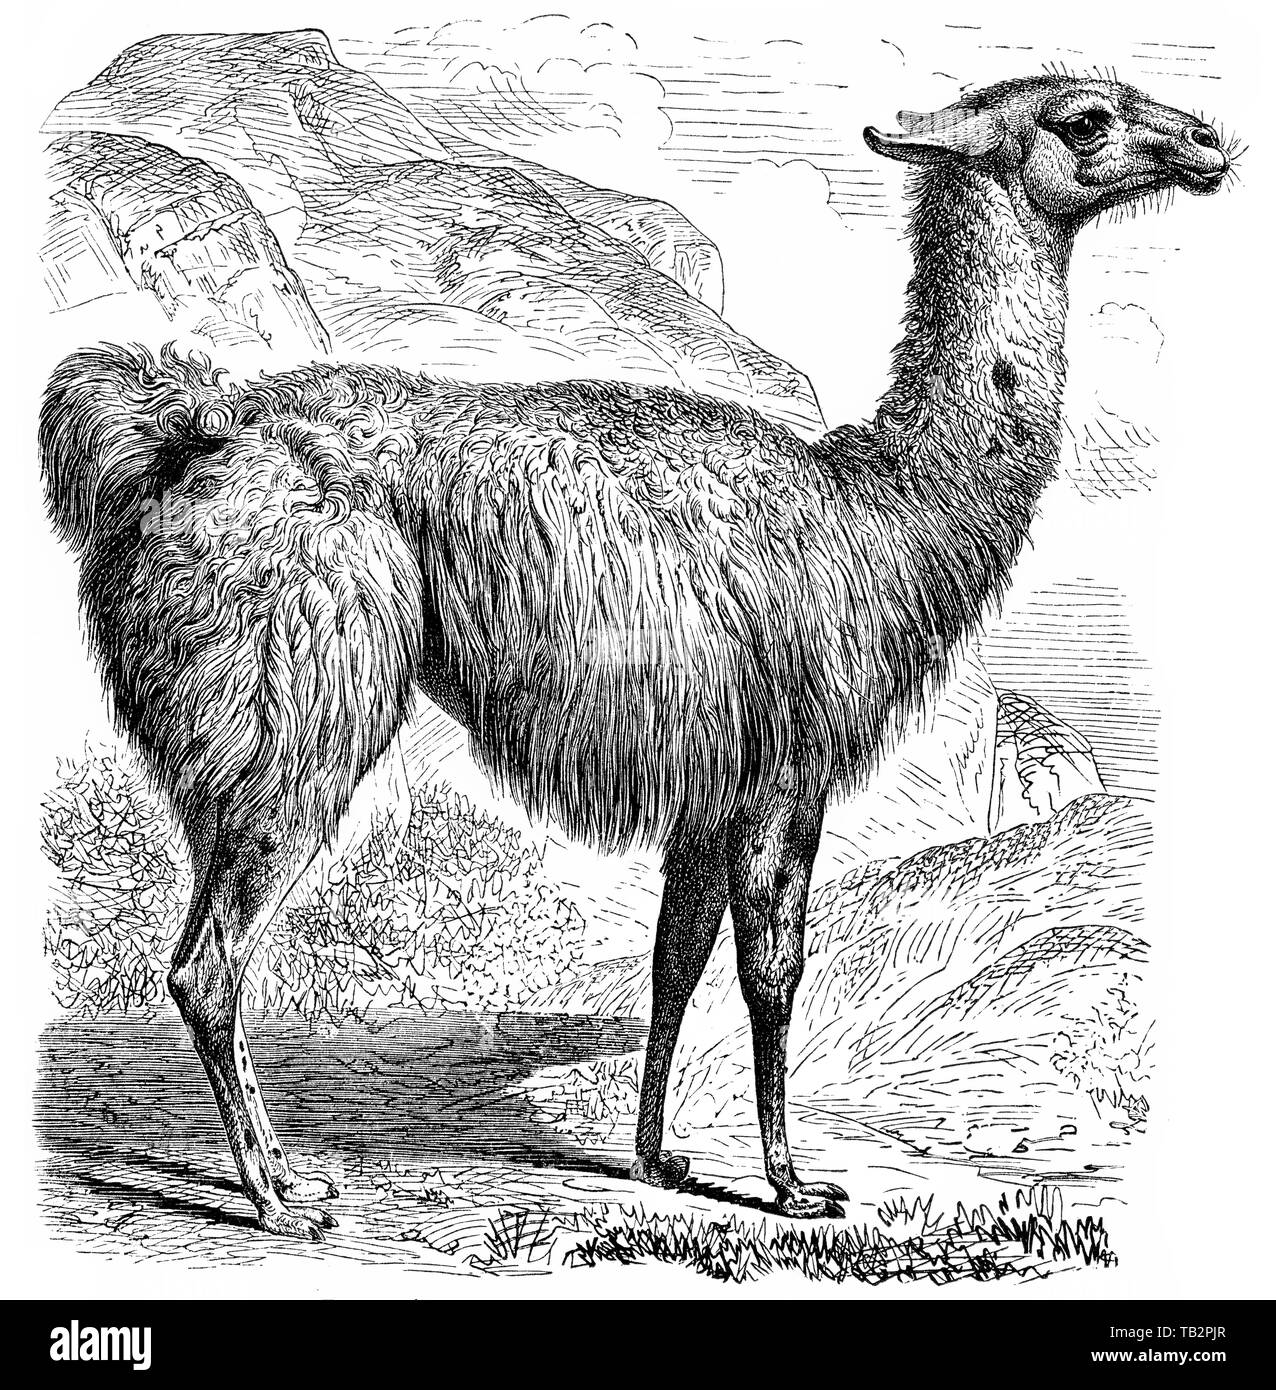 Historische, zeichnerische Darstellung, Lama (Lama glama),  Kamele (Camelidae), eine Säugetierfamilie aus der Ordnung der Paarhufer (Artiodactyla),  Tylopoda), 19. Jahrhundert, Stock Photo